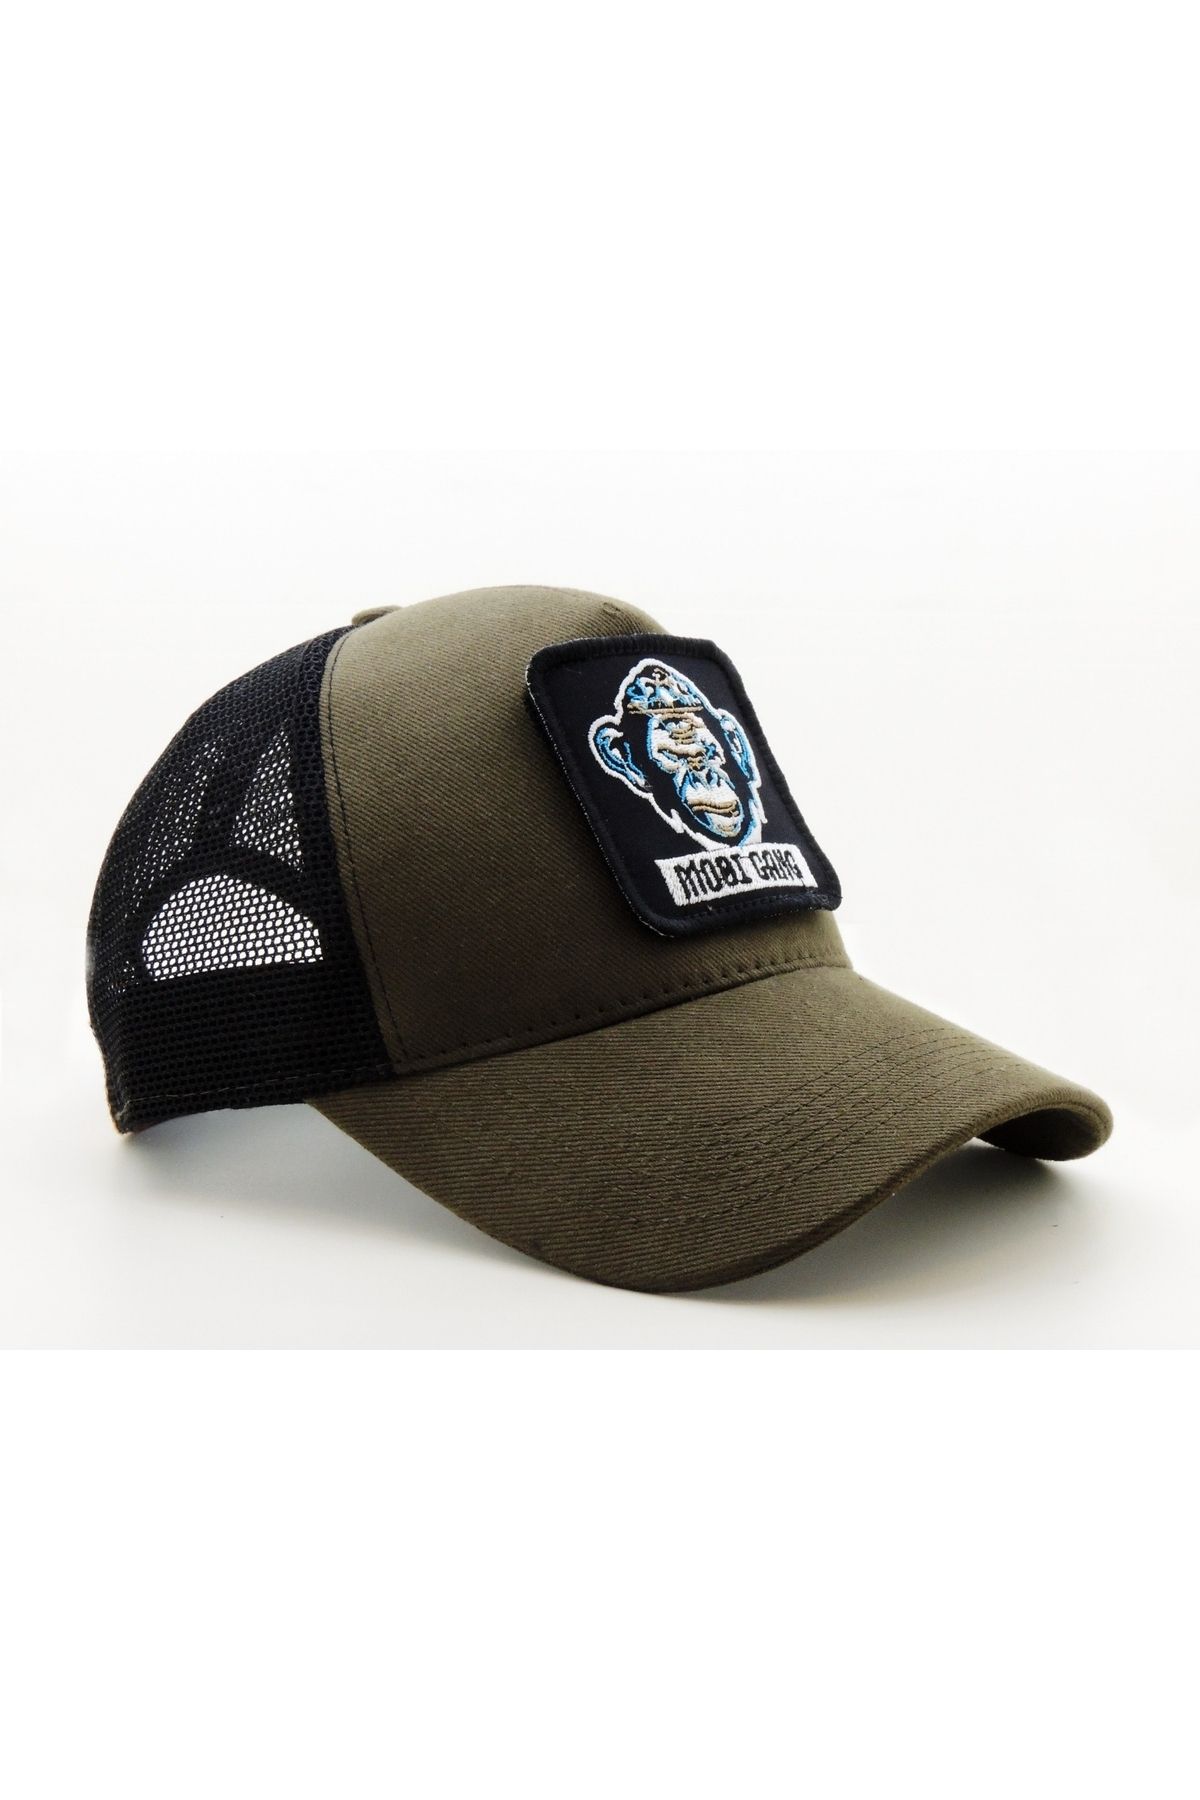 CityGoat Trucker (NAKIŞ) Mobi Gang Logolu Unisex Haki-Siyah Şapka (CAP)